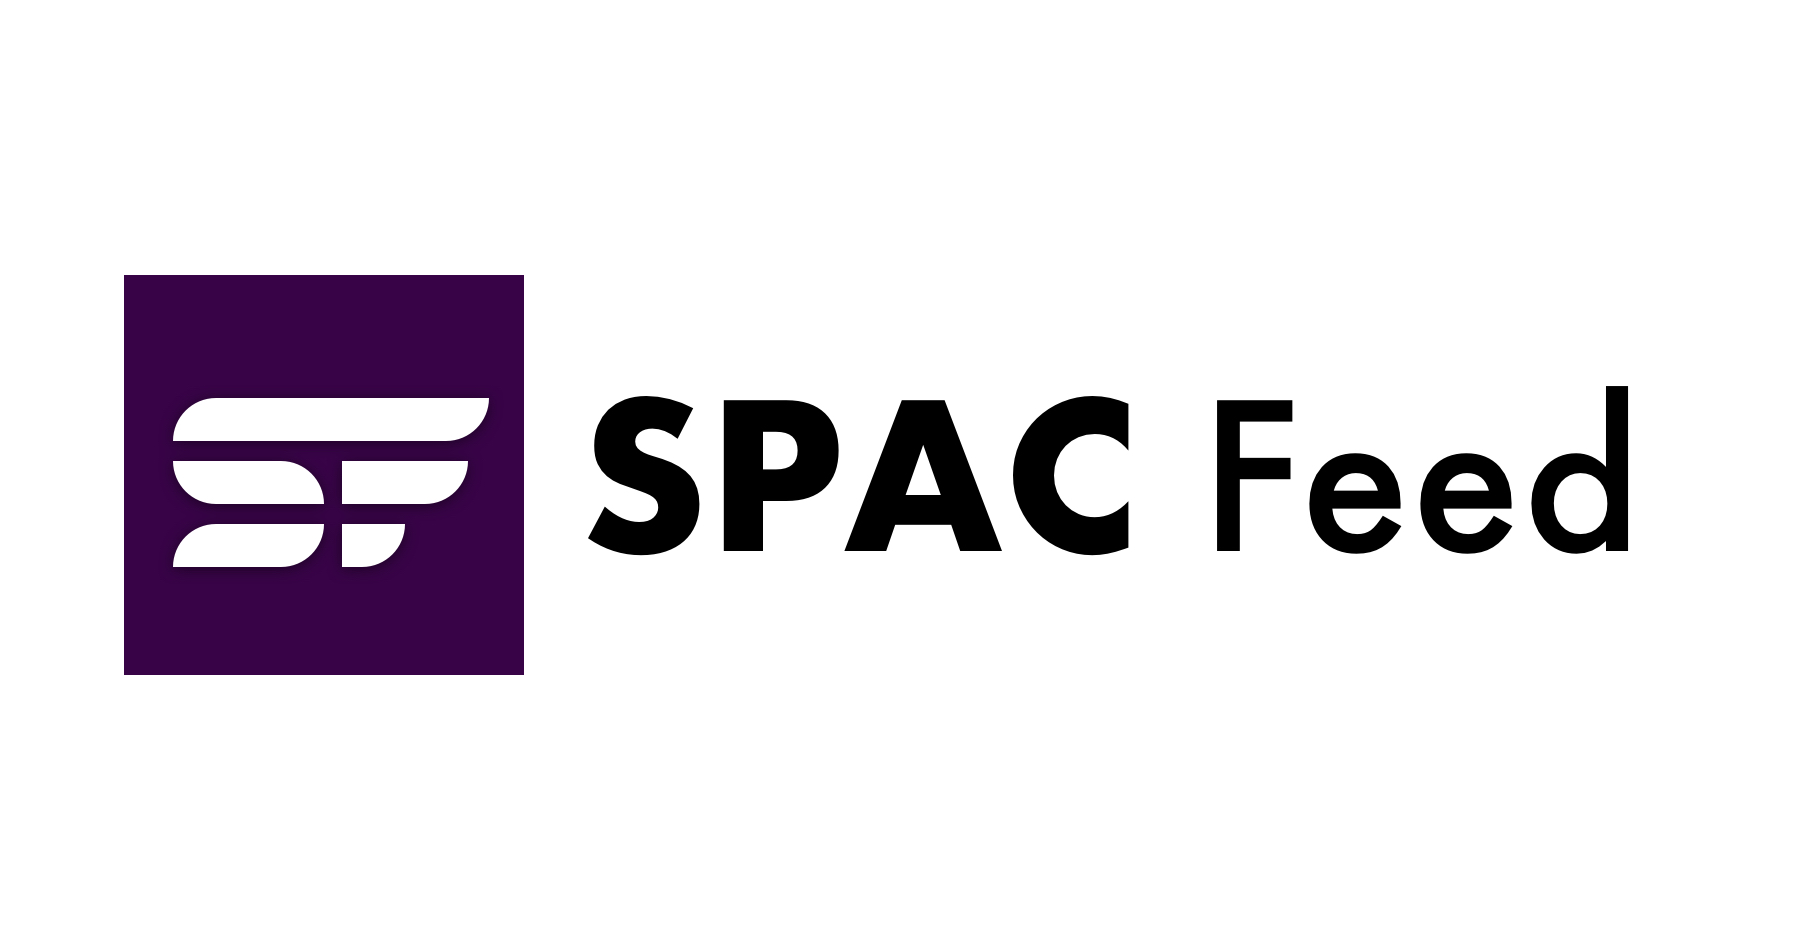 10B 美元的 SPAC 交易近三年后，Lordstown 创始人兼前首席执行官以 3 万美元购买公司剩余资产SPAC饲料